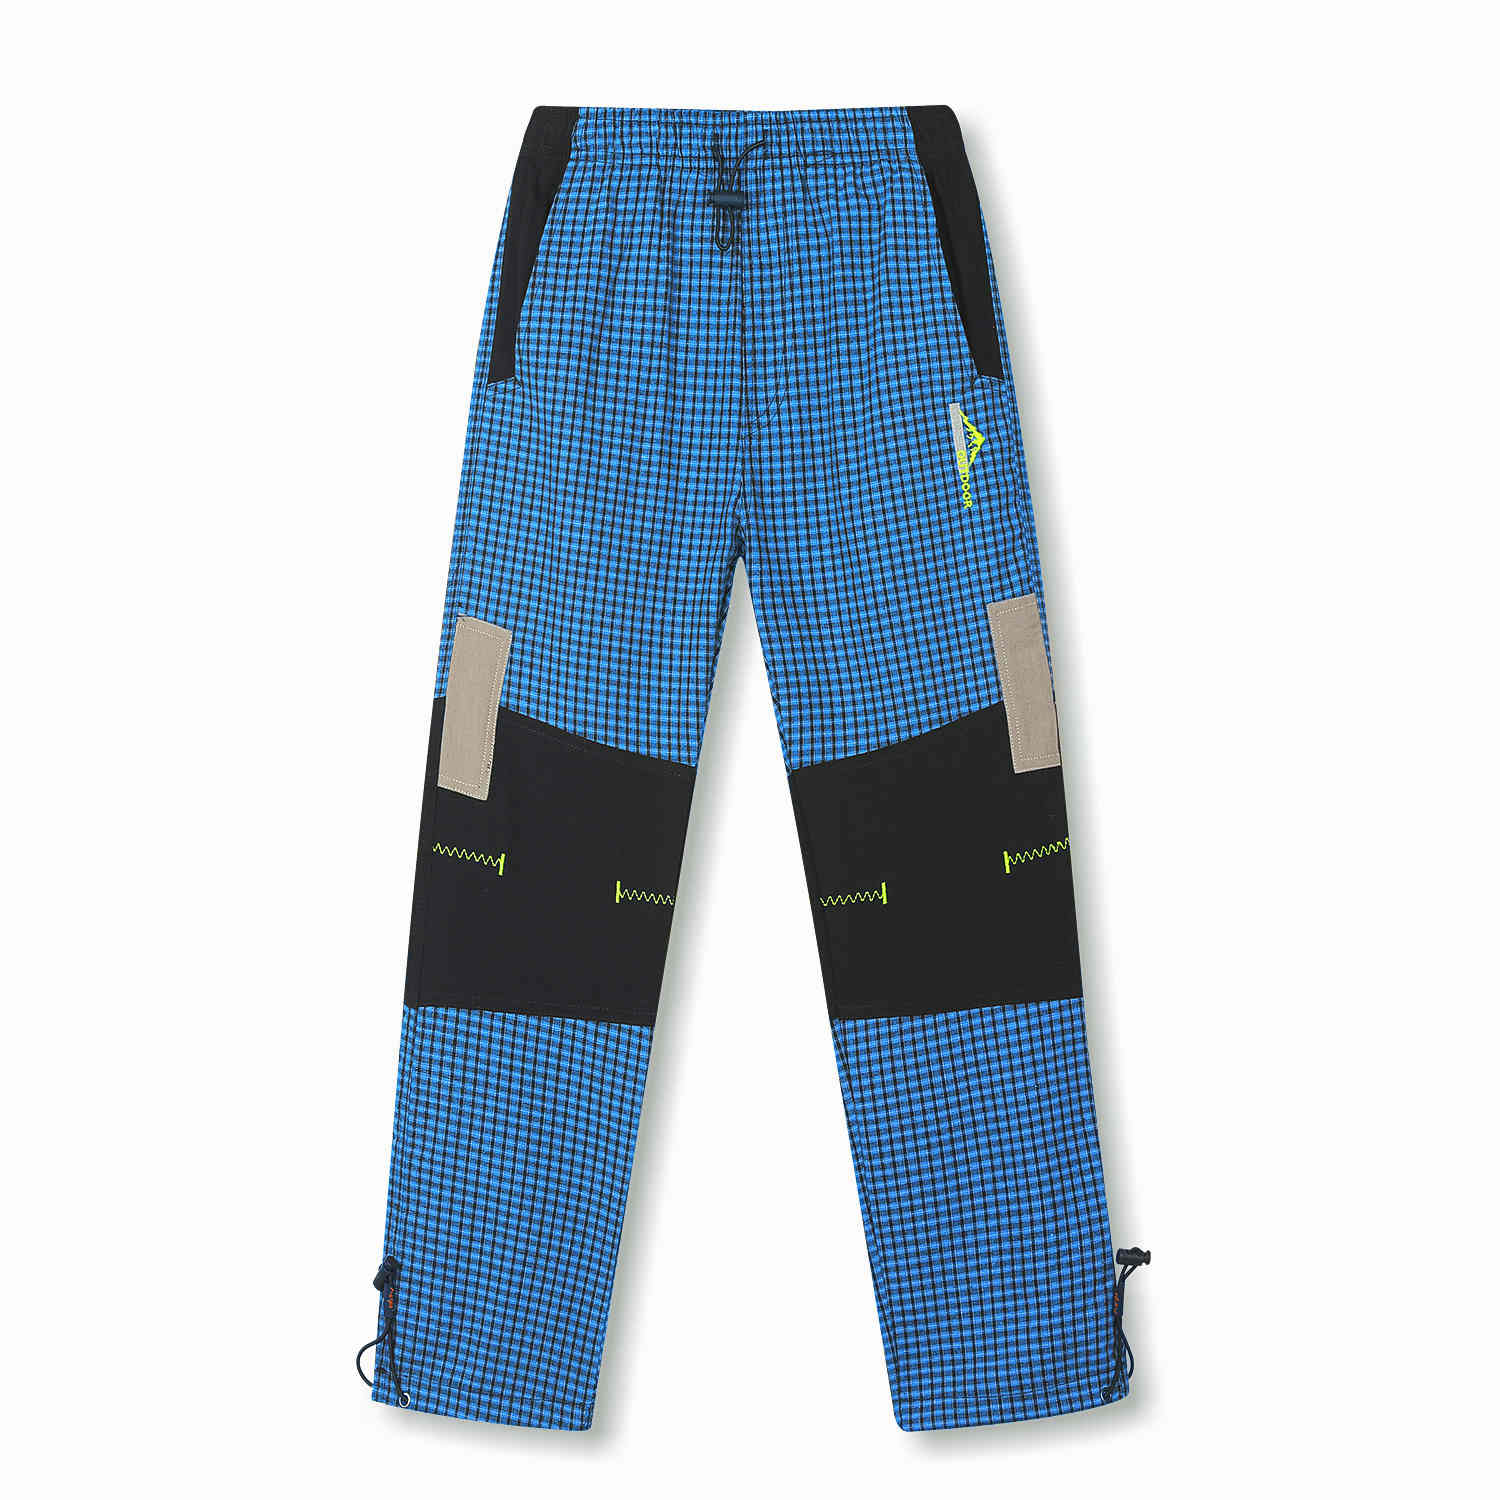 Chlapecké plátěné kalhoty - KUGO FK6661, modrá Barva: Modrá, Velikost: 116